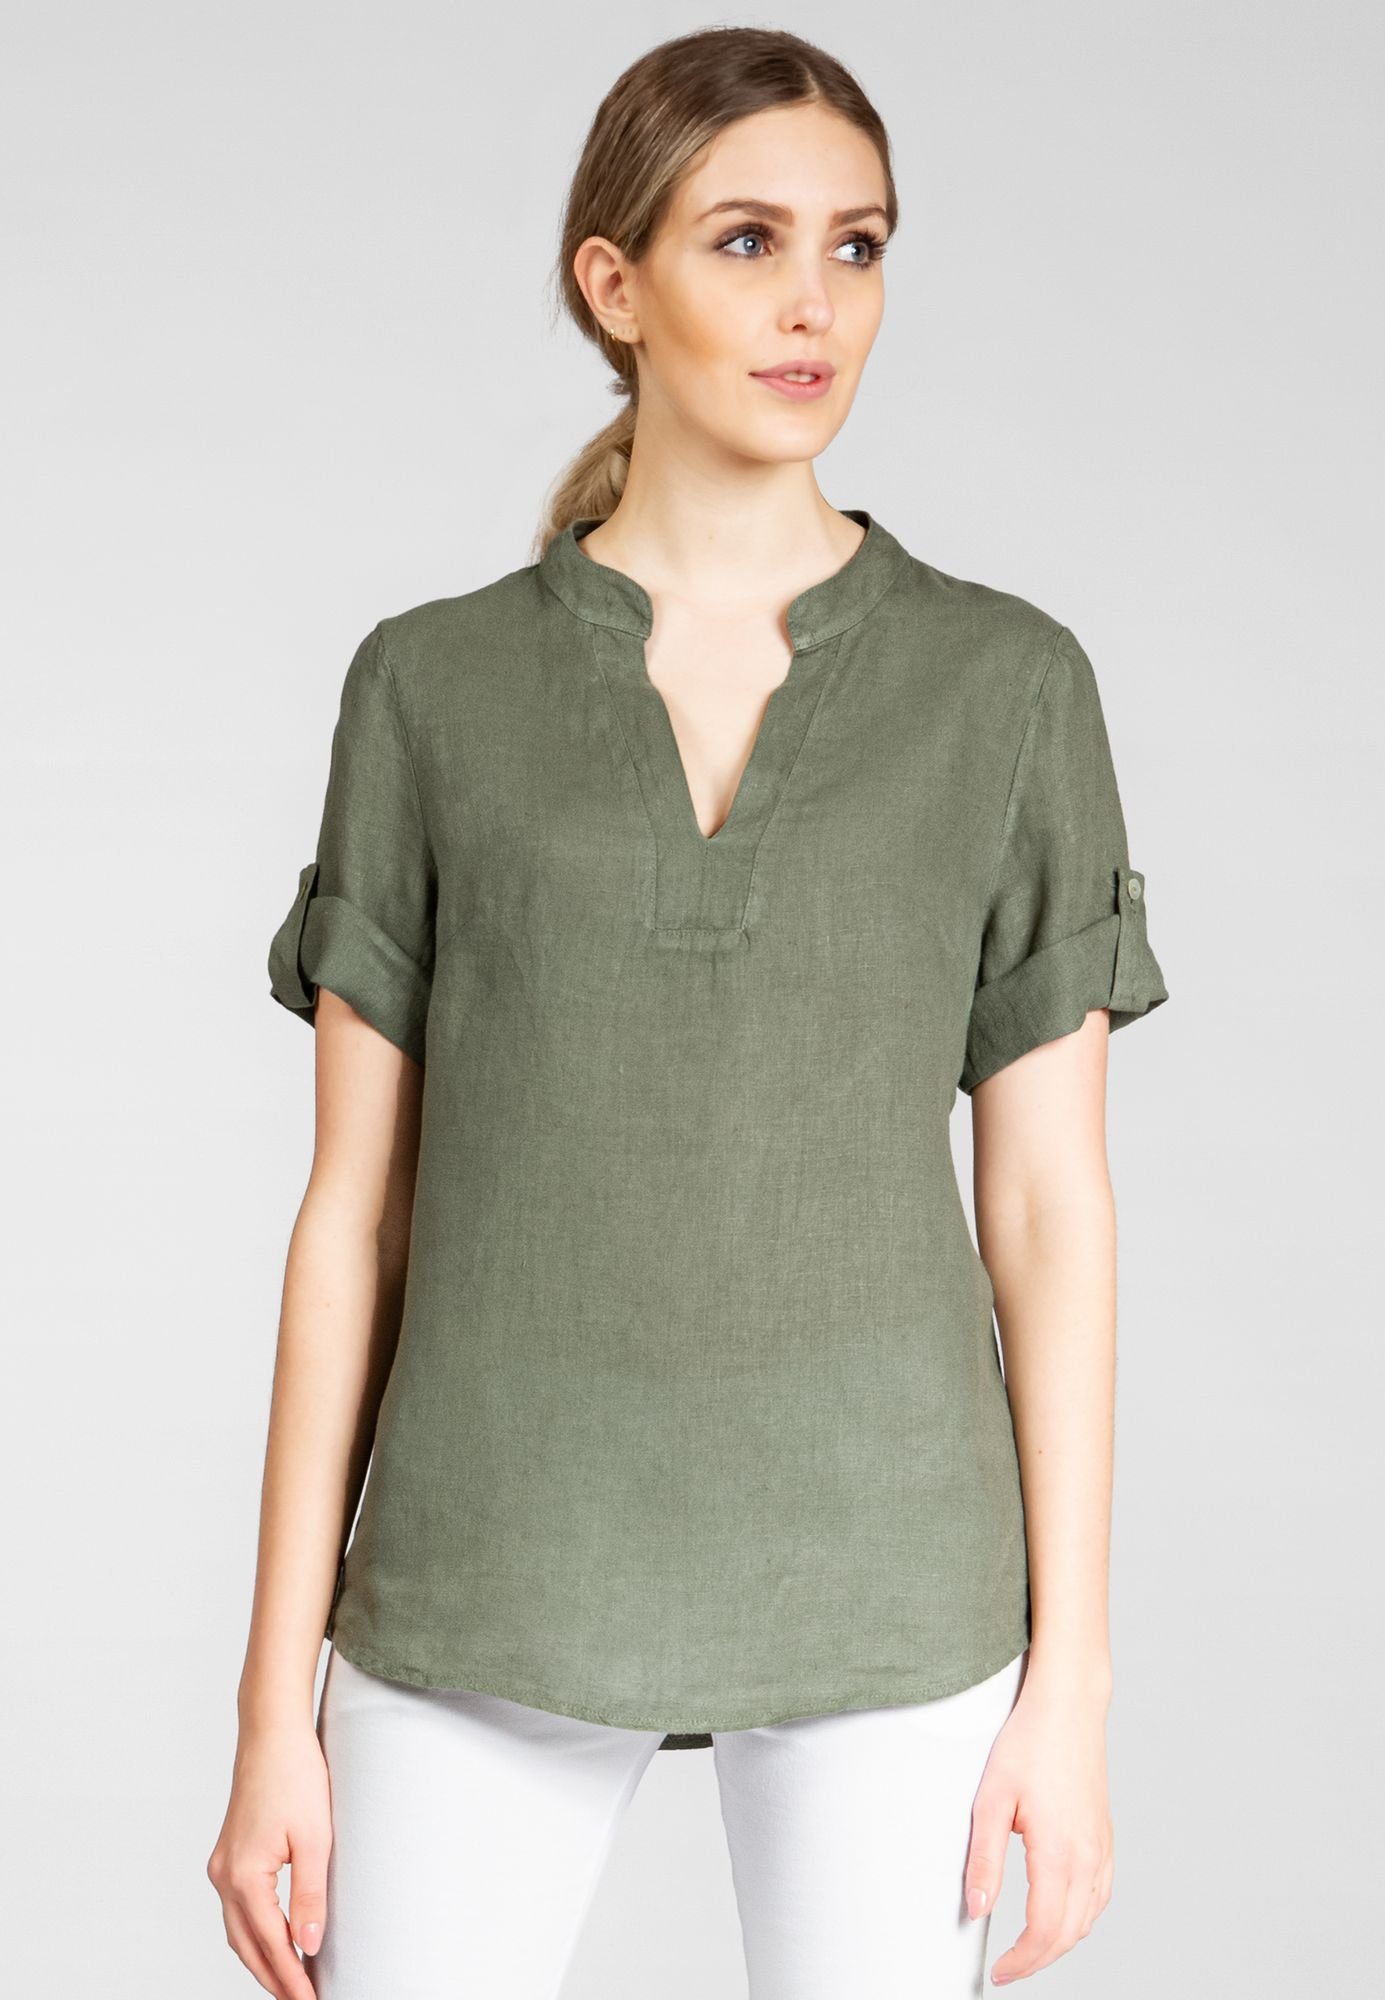 elegante BLU024 mit Sommer Shirtbluse V-Ausschnitt grün oliv Leinenbluse Caspar Damen stylischem Halbarm